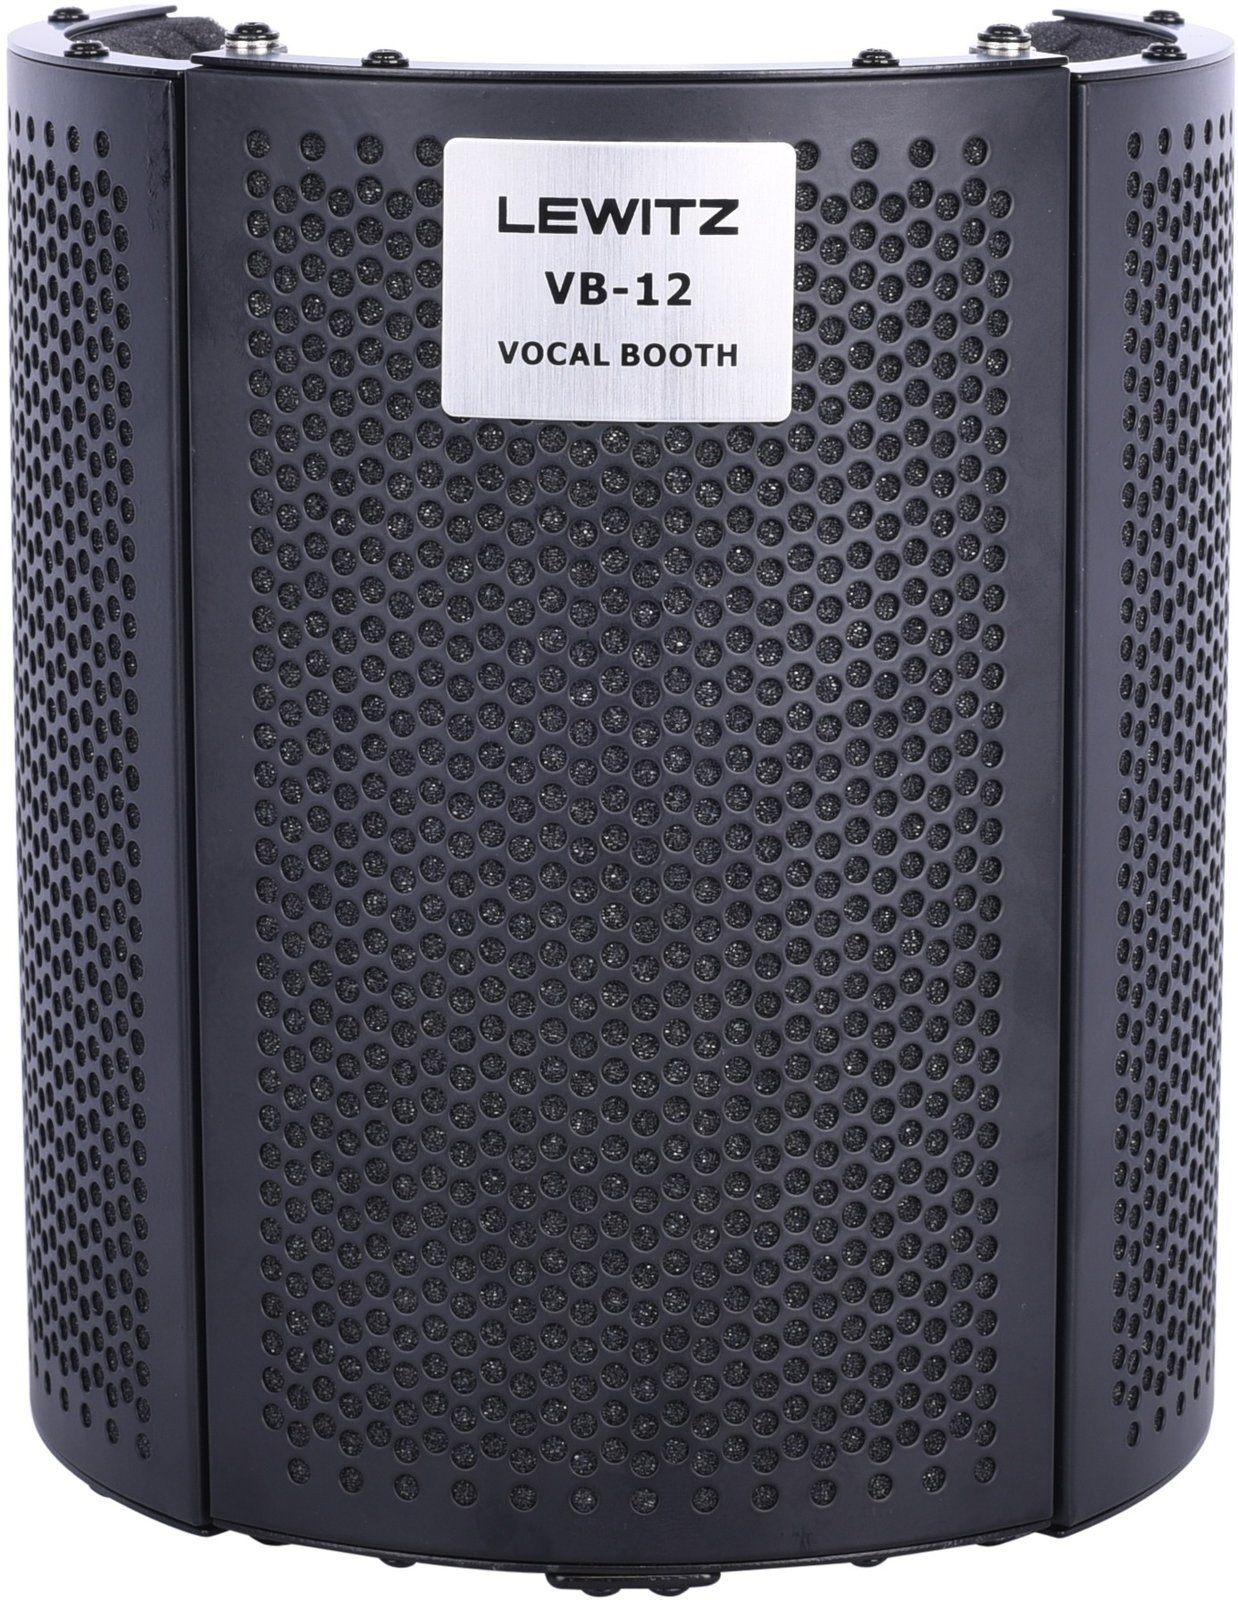 Portable akustische Abschirmung Lewitz VB-12